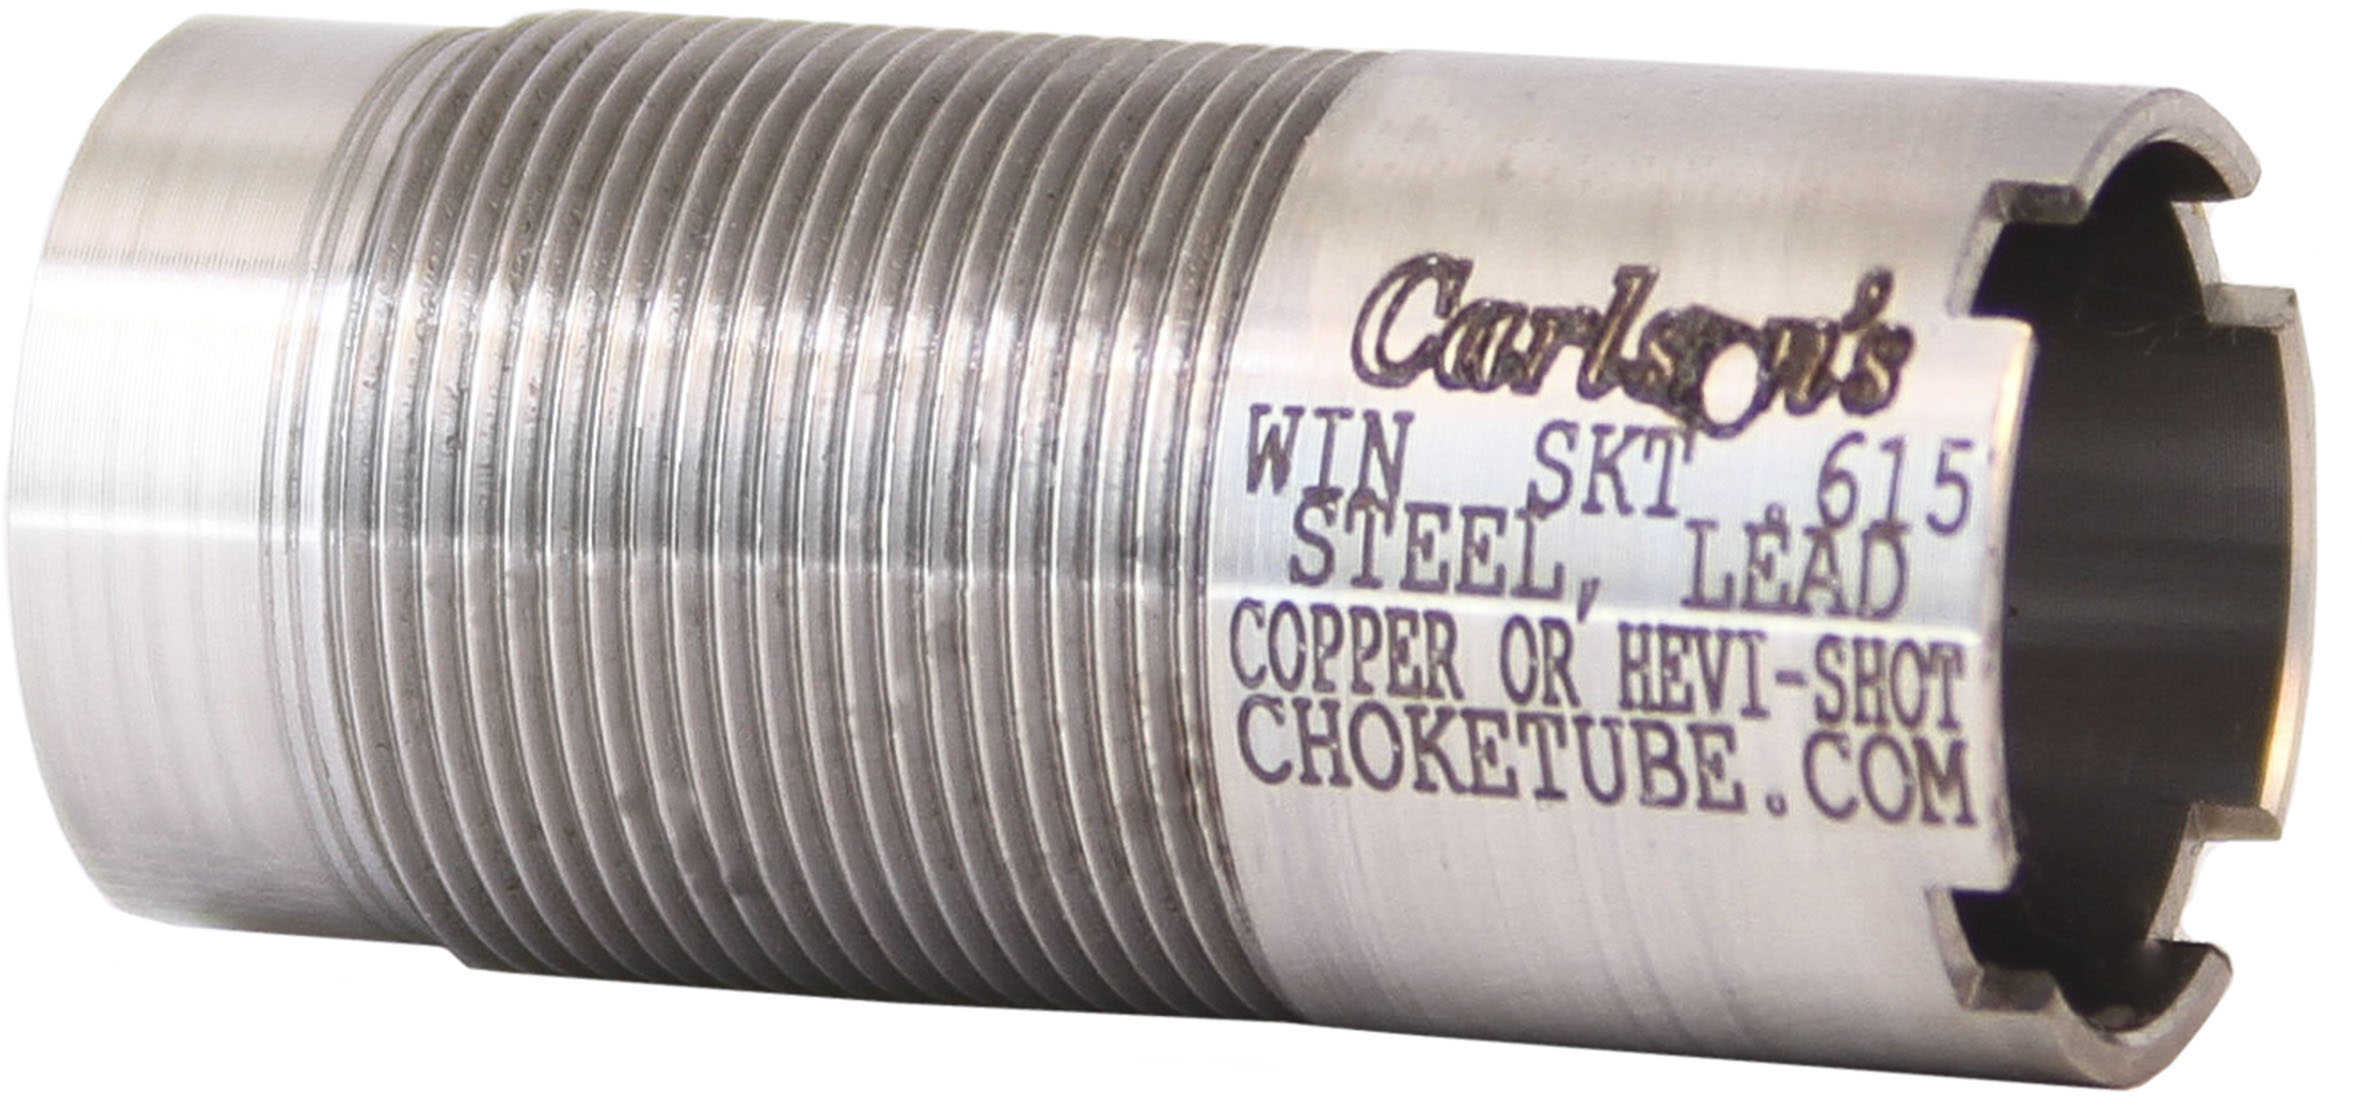 Carlsons Winchester Flush Choke Tube 20 Gauge, Skeet Md: 50101